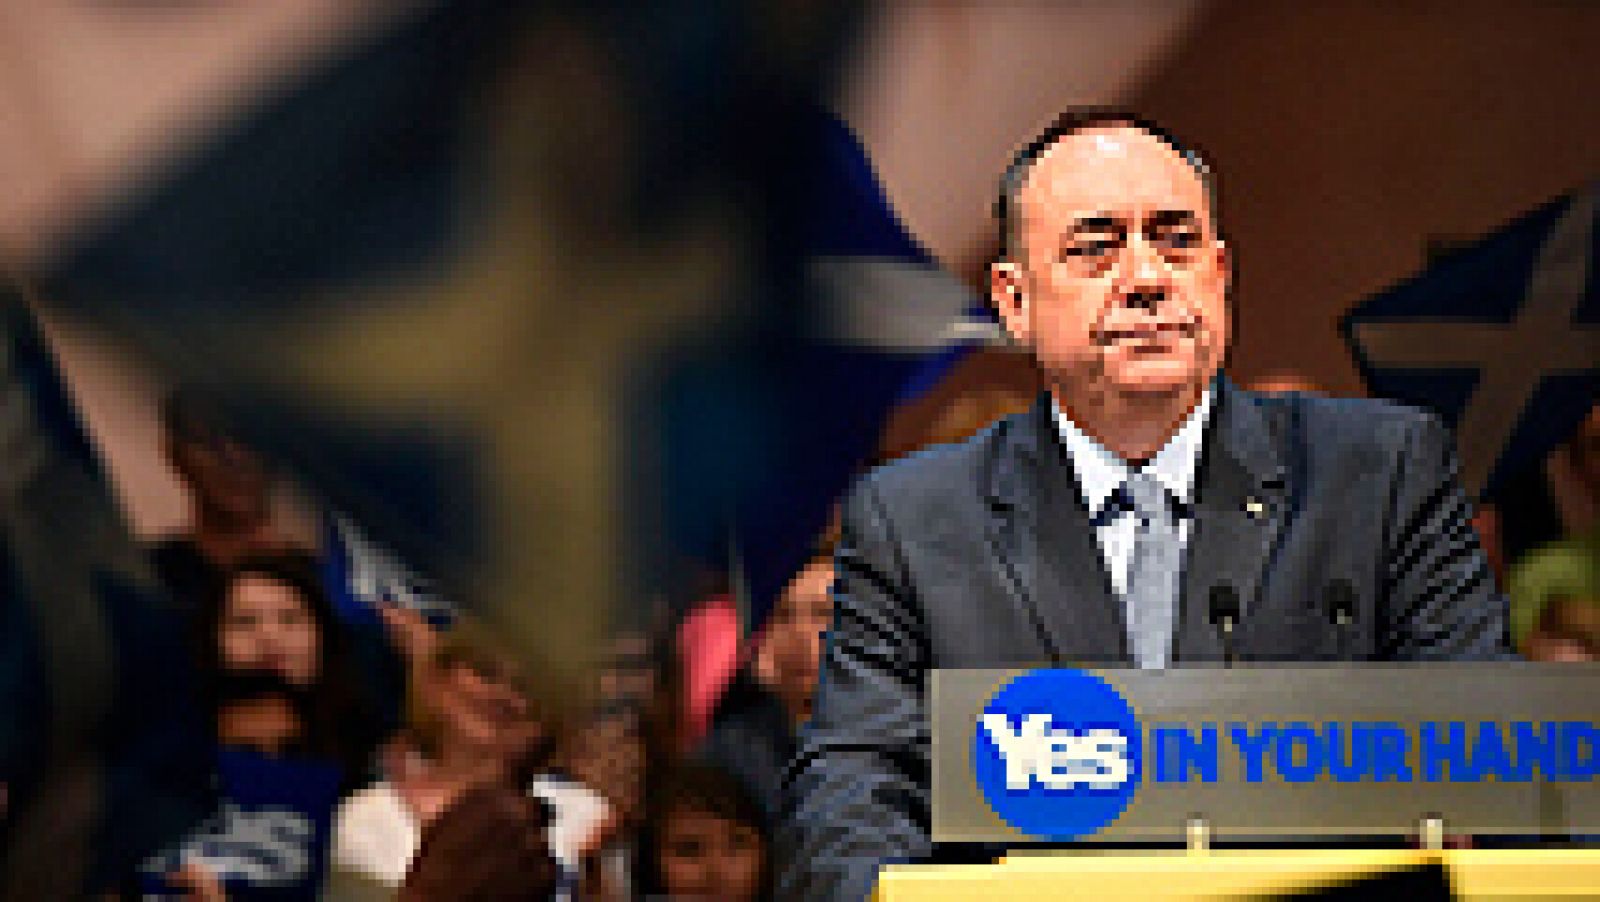   El líder independentista Alex Salmond ha anunciado que dimitirá como líder del Partido Nacionalista Escocés (SNP) y como primer ministro del Gobierno autónomo tras la derrota en el referéndum de independencia. En una rueda de prensa, Salmond ha explicado que Escocia se beneficiará "de un nuevo liderazgo" en la nueva fase de negociación con Londres para lograr más autonomía.